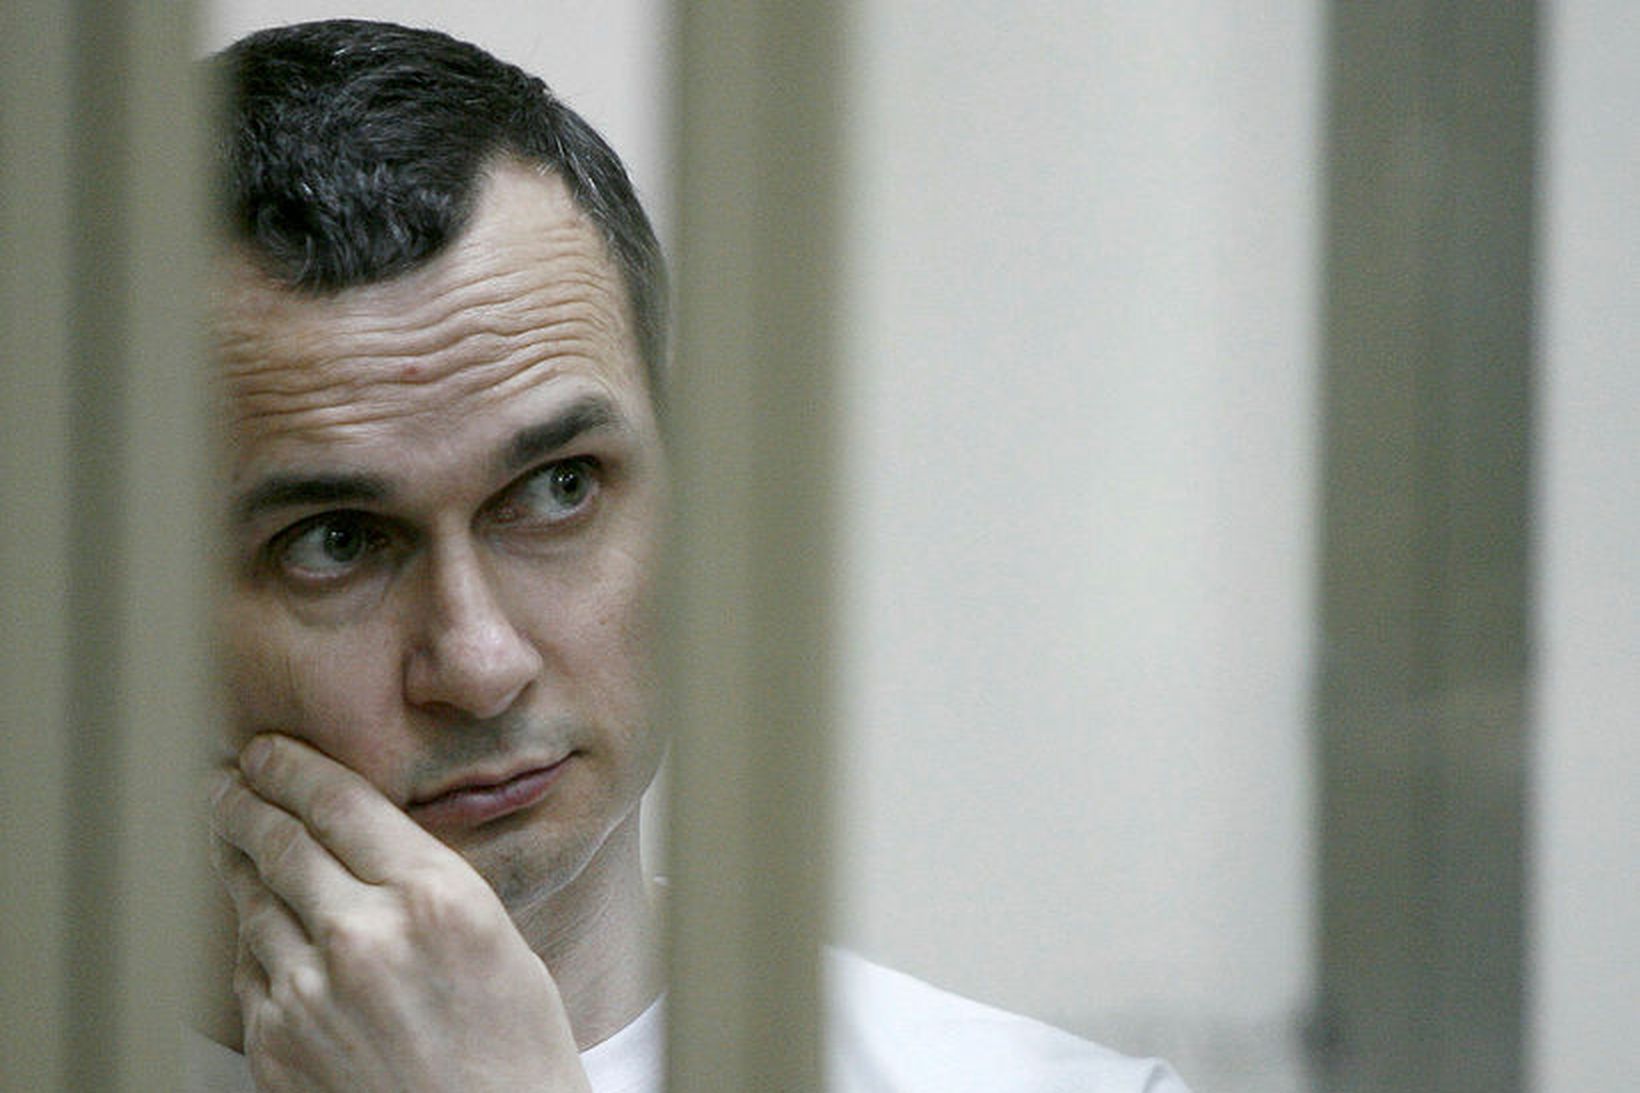 Úkraínski kvikmyndagerðarmaðurinn Oleg Sentsov var á meðal þeirra fanga sem …